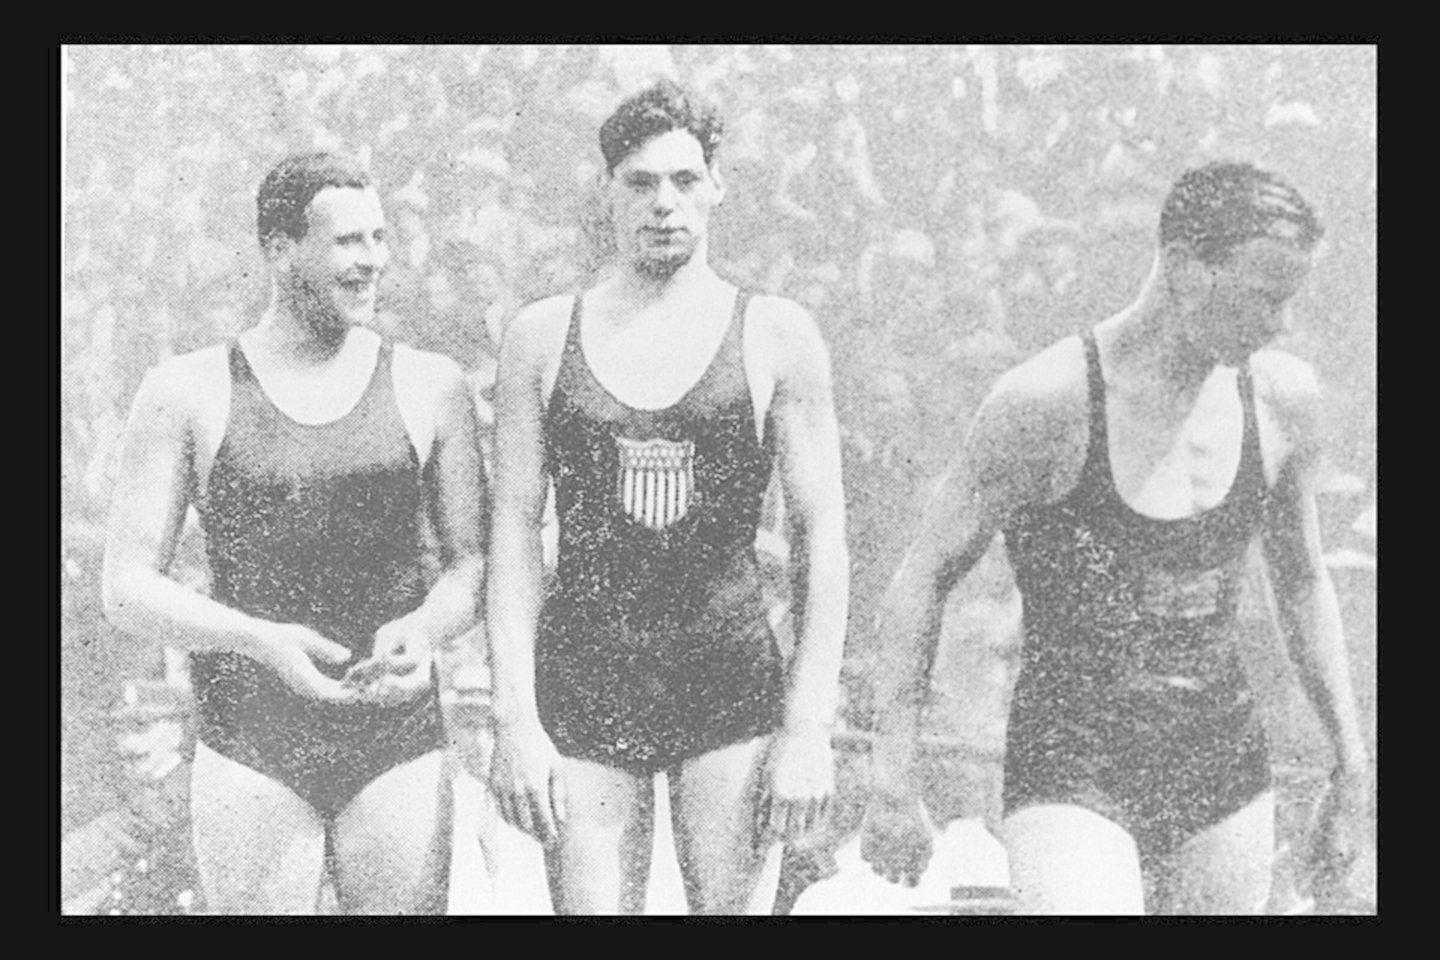  Johnny Weissmuleris suvaidino Tarzaną.  <br> IOC nuotr.